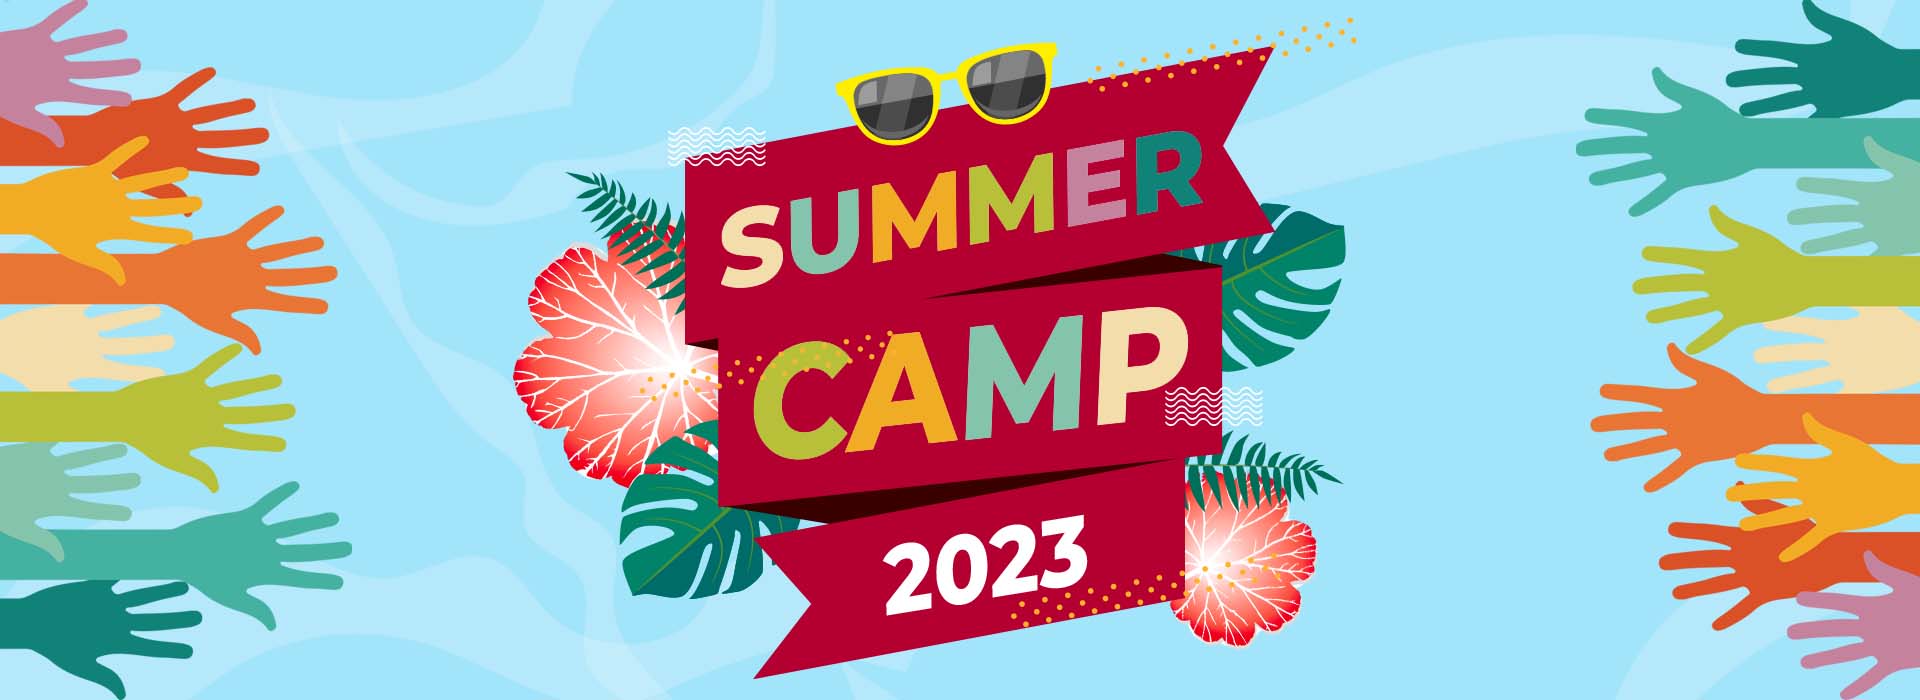 Summer Camp - Campamento de verano 2023 en Dos Hermanas